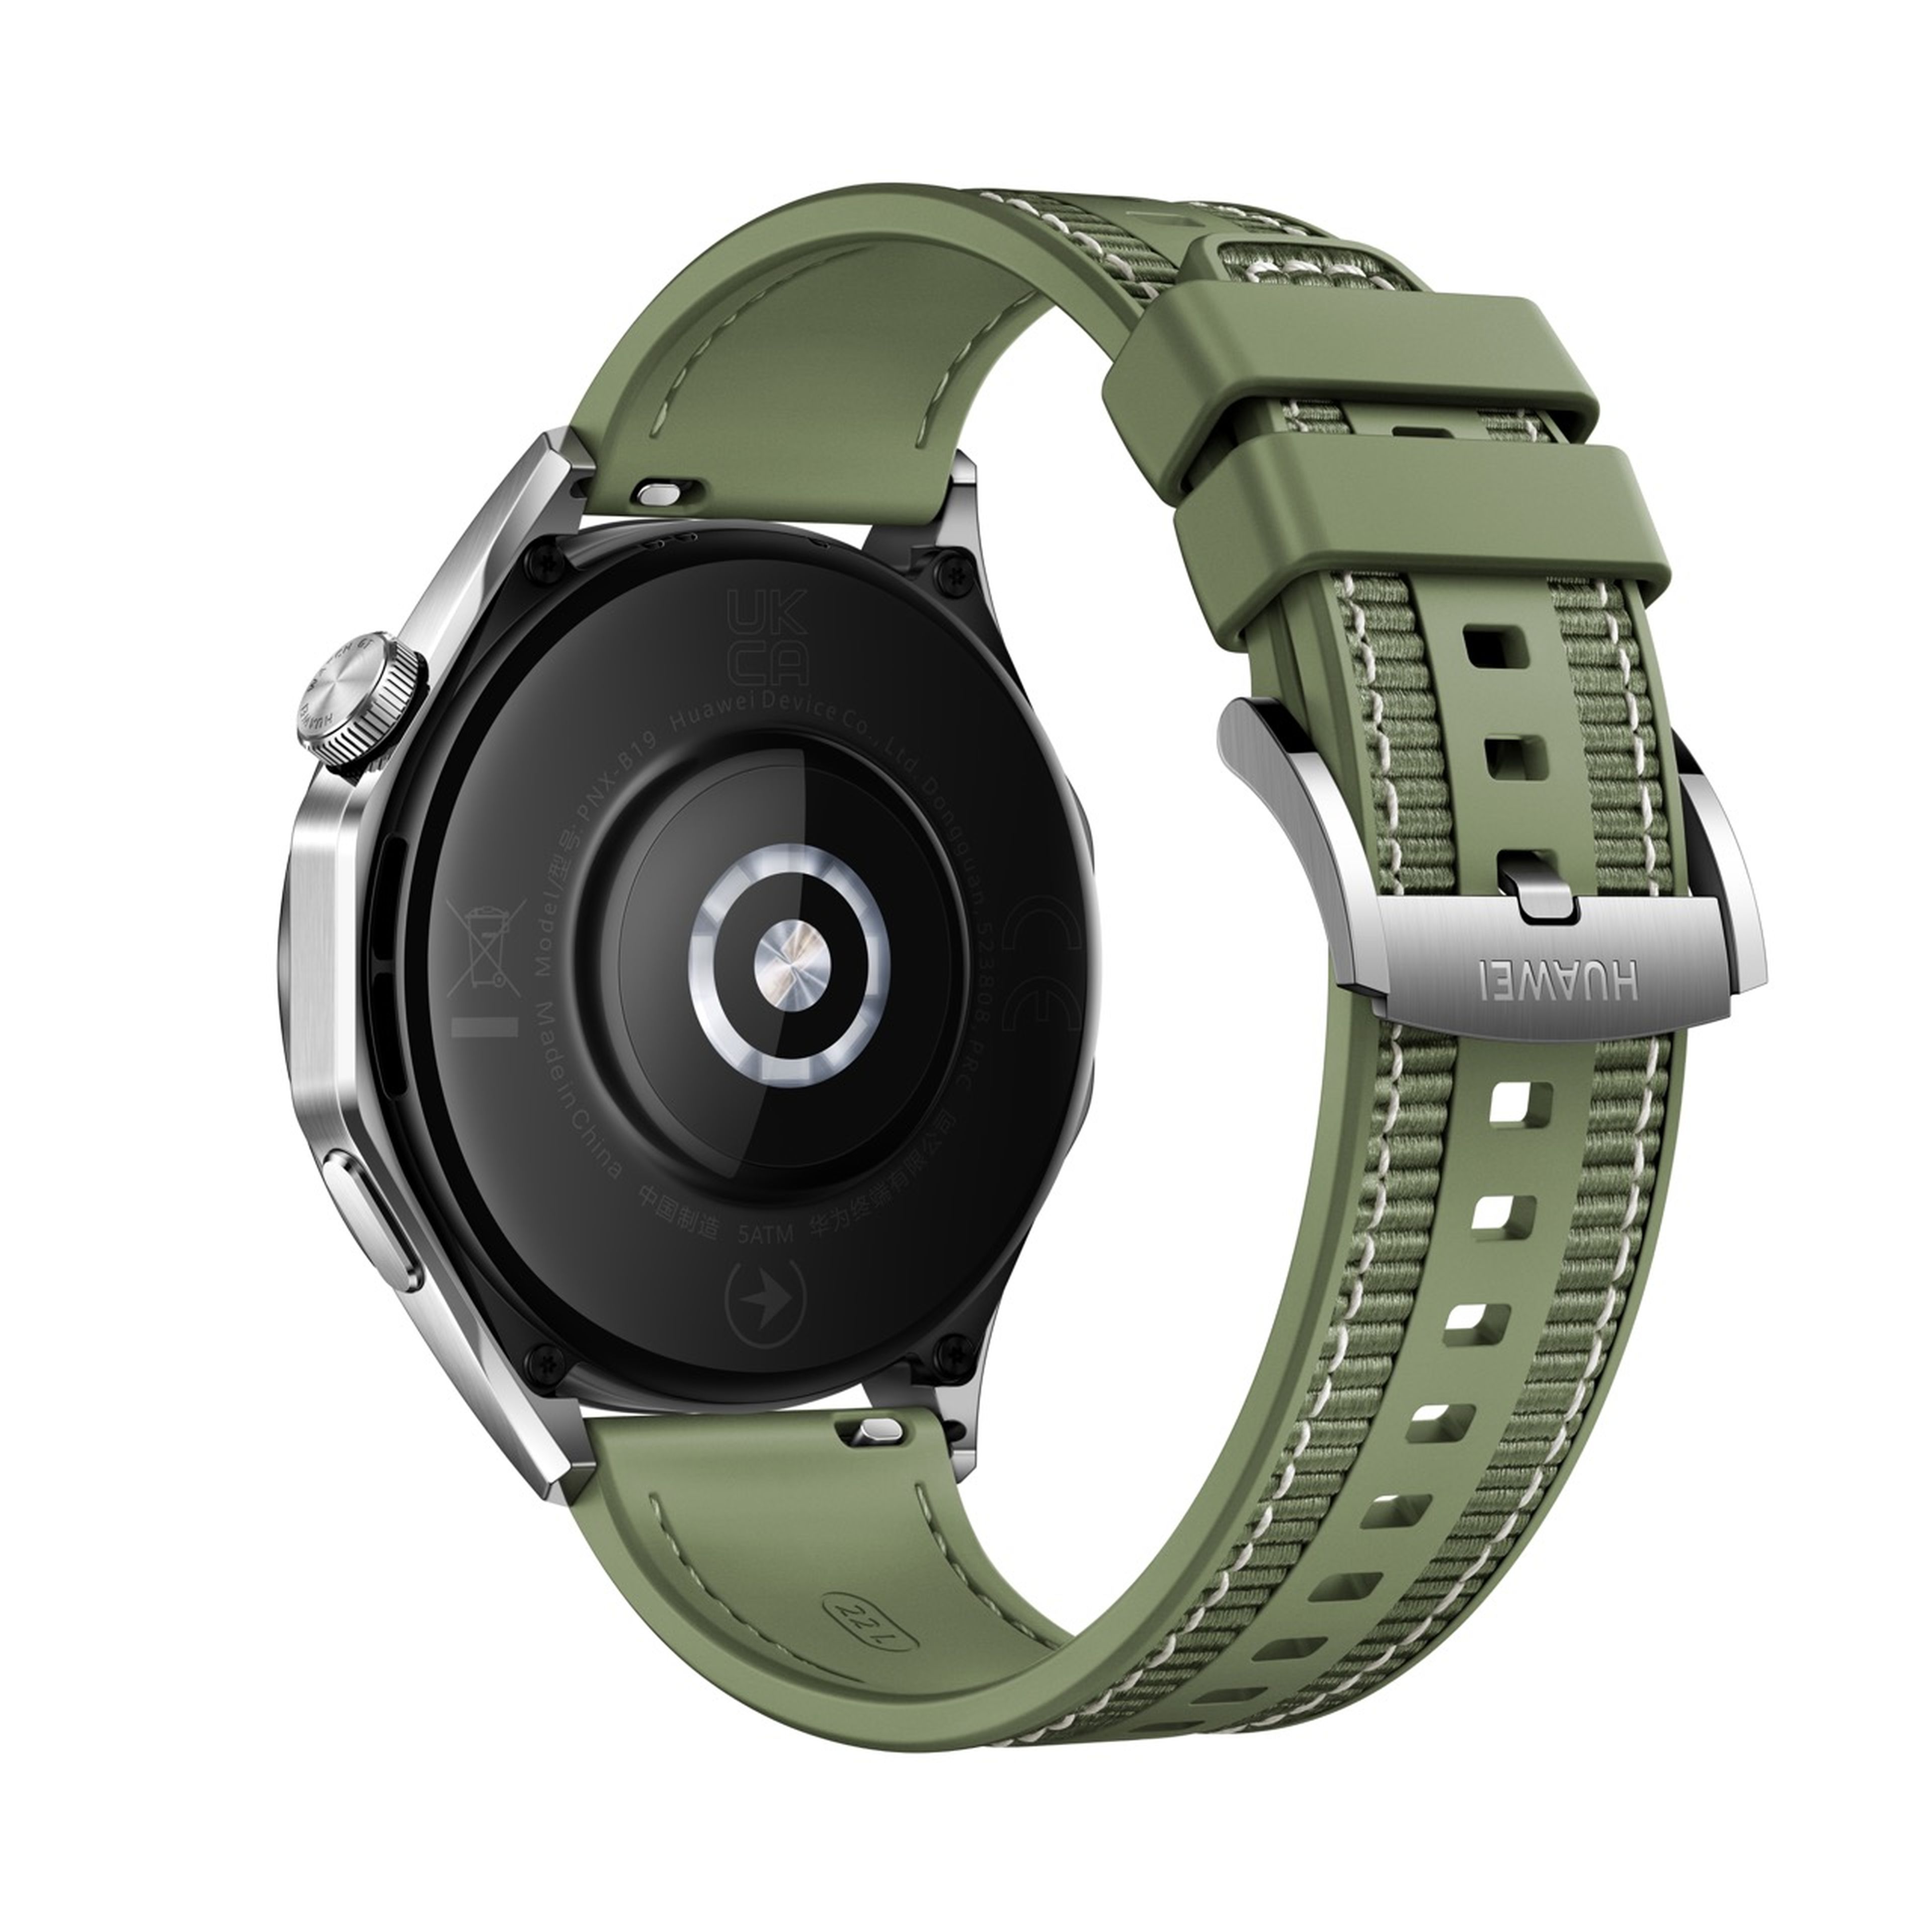 Huawei Watch GT4 41mm plata con correa metálica al Mejor Precio